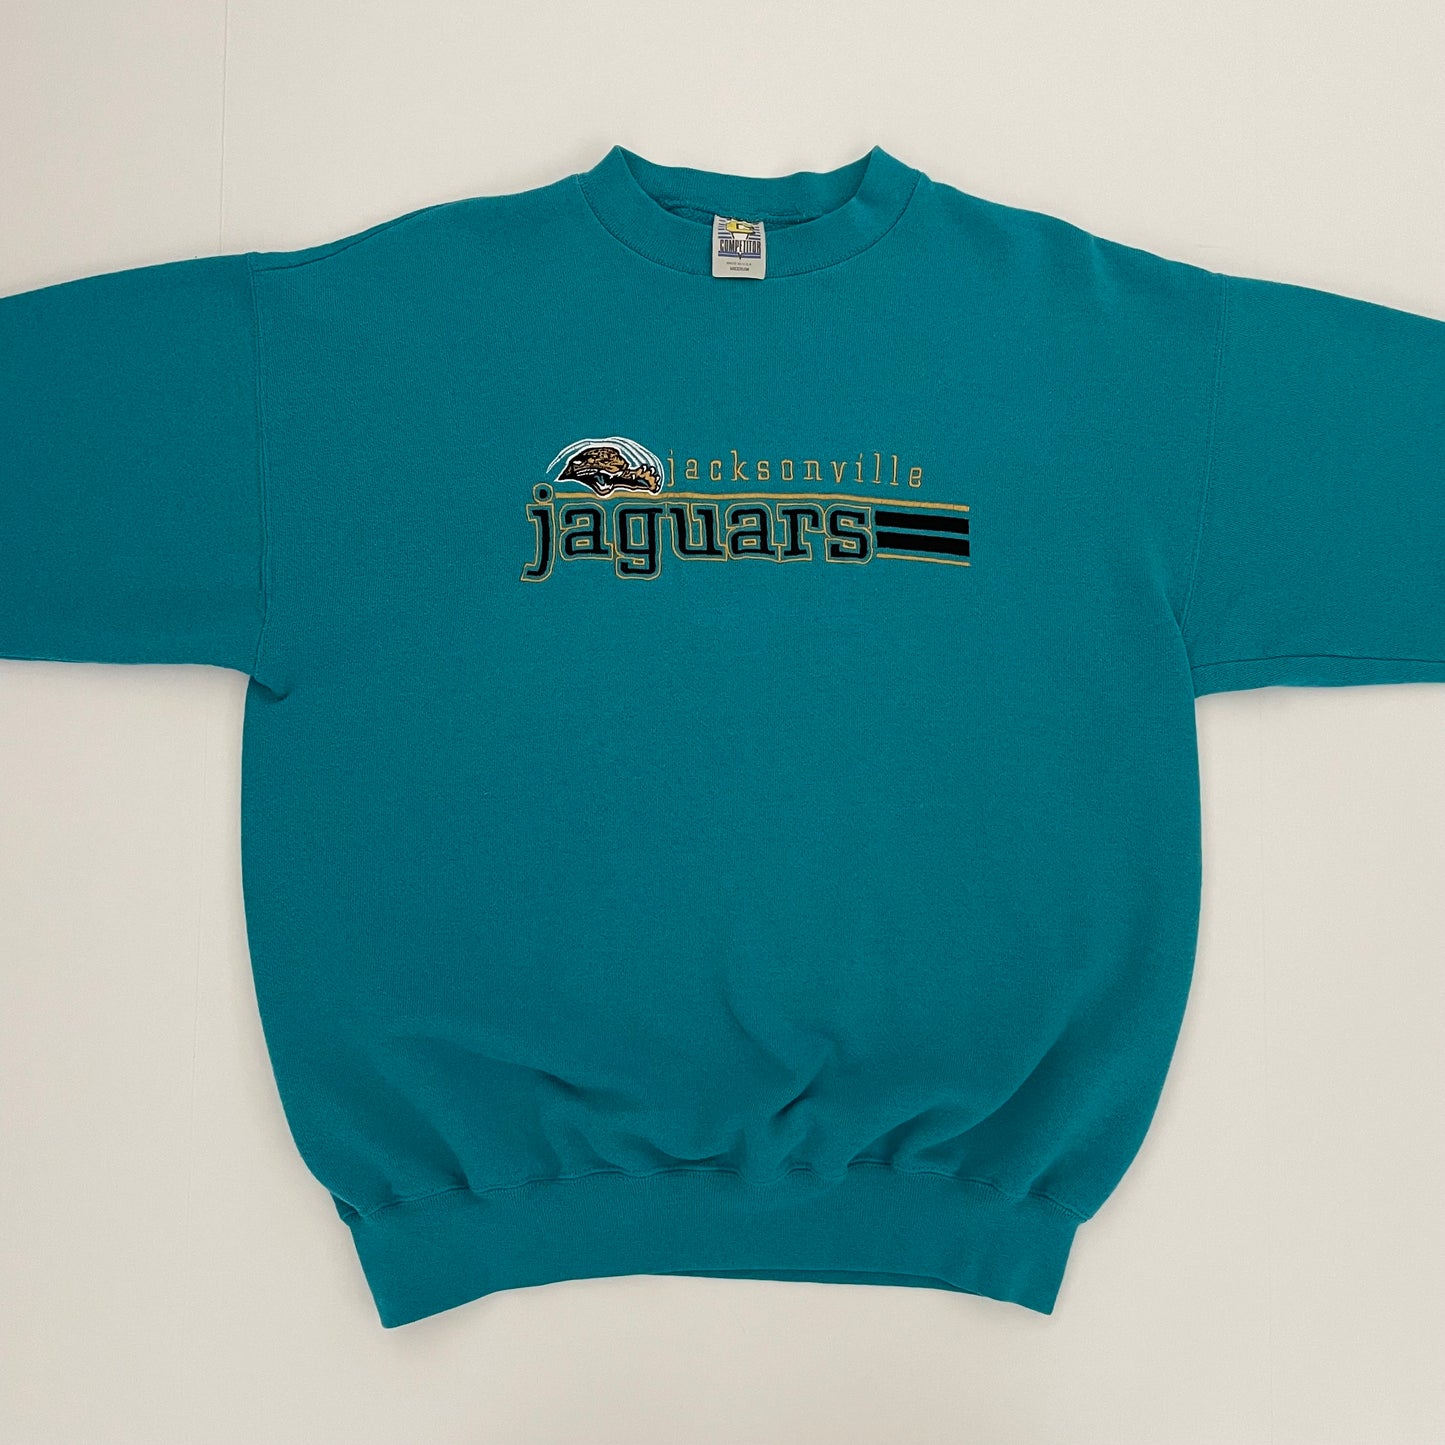 Vintage Jacksonville Jaguars embroidered sweatshirt size MEDIUM